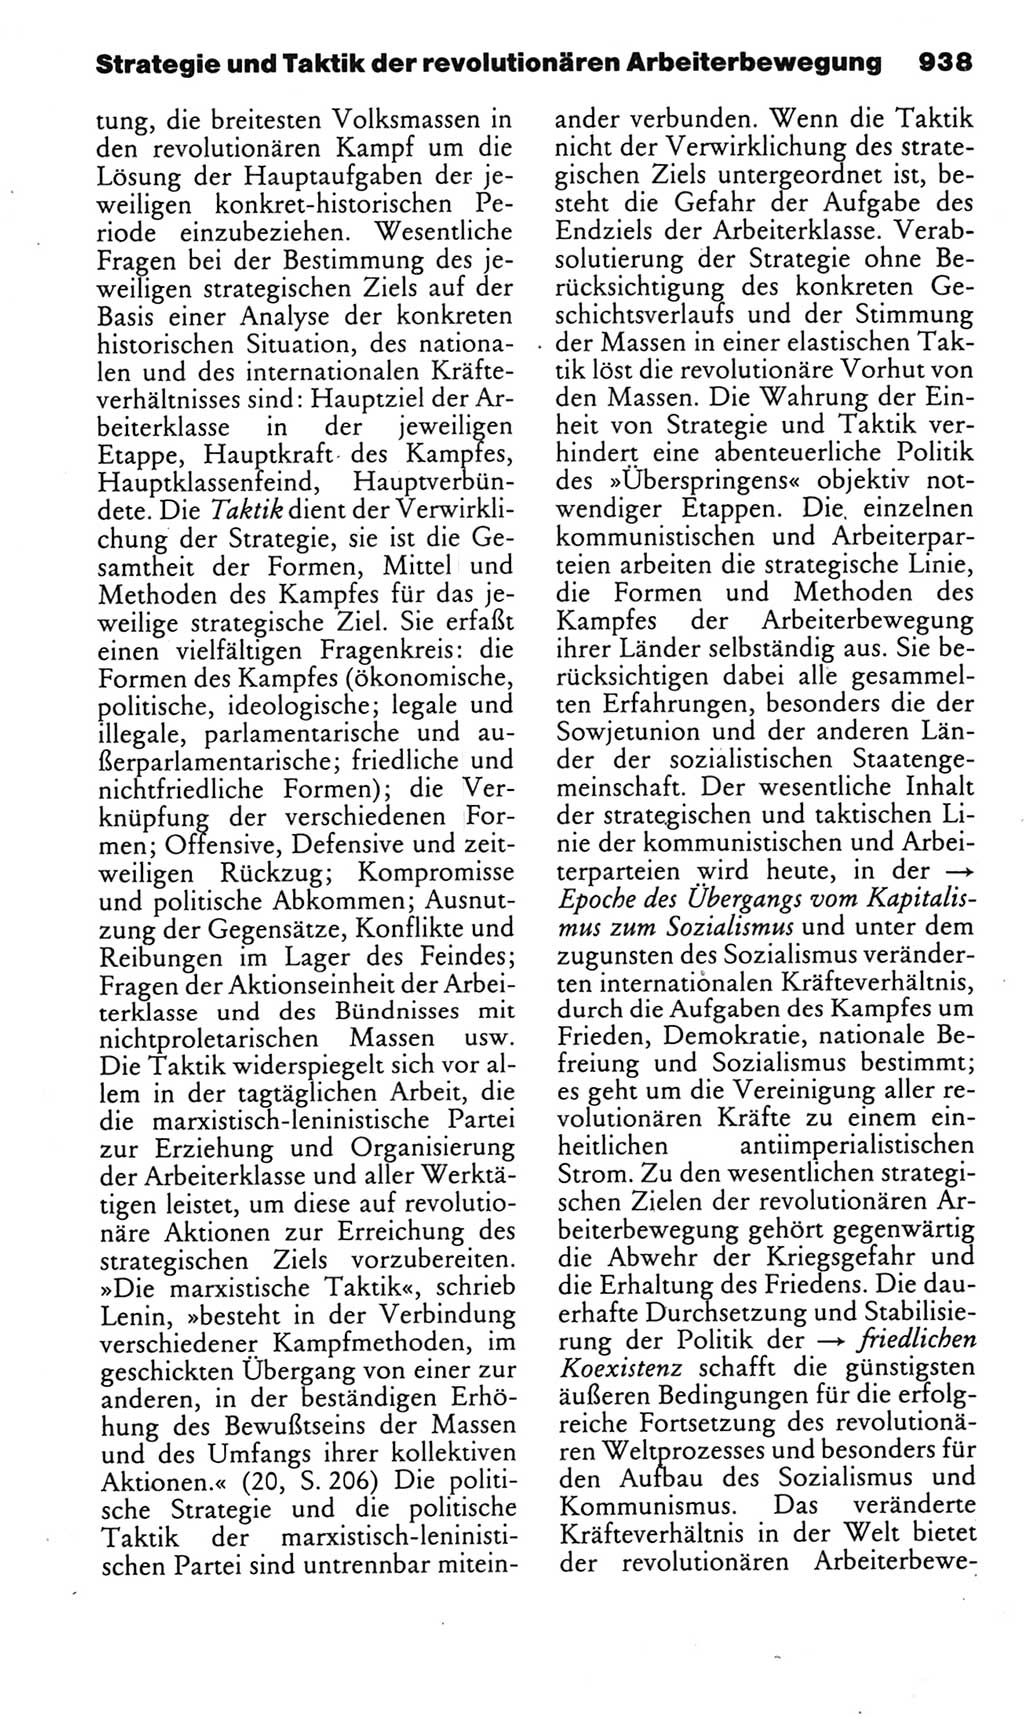 Kleines politisches Wörterbuch [Deutsche Demokratische Republik (DDR)] 1985, Seite 938 (Kl. pol. Wb. DDR 1985, S. 938)